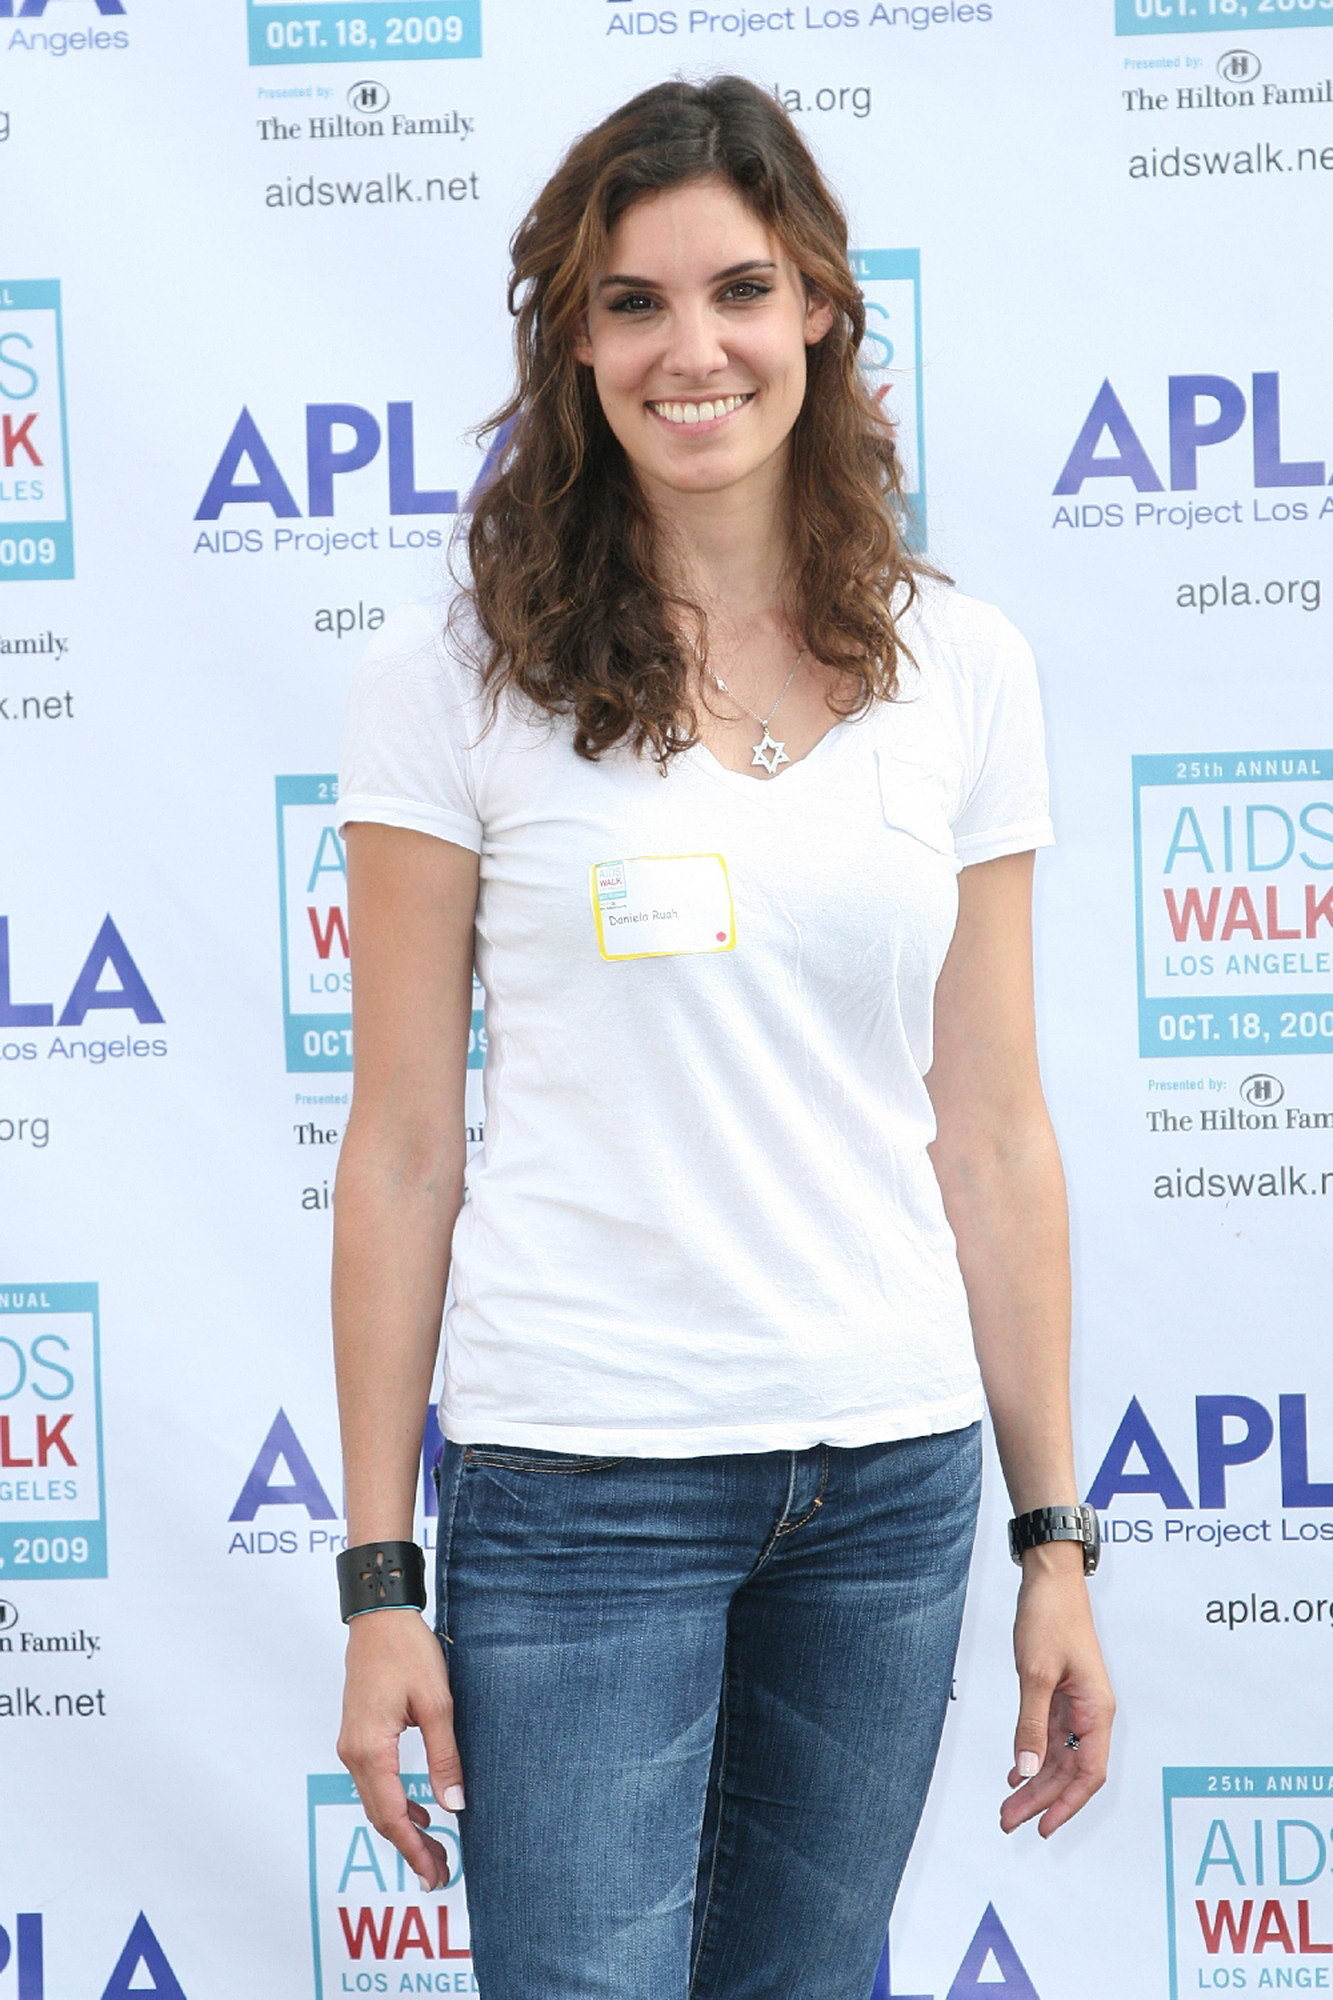 25th Annual AIDS Walk Los Angeles - Daniela Ruah Photo (9024778) - Fanpop